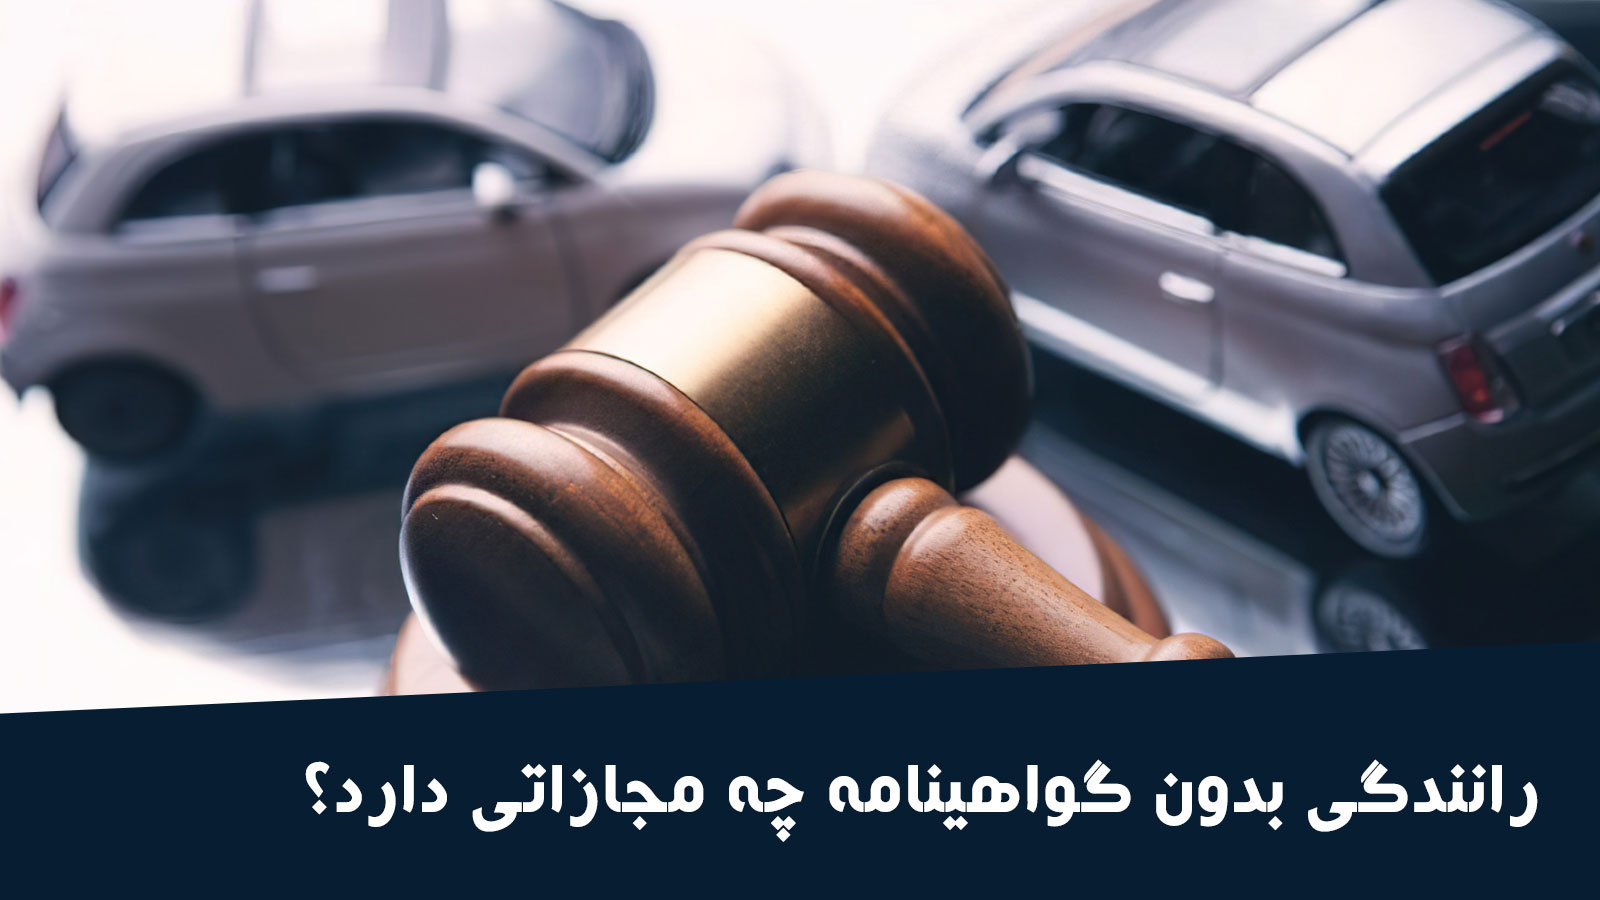 رانندگی بدون گواهینامه چه مجازاتی دارد؟